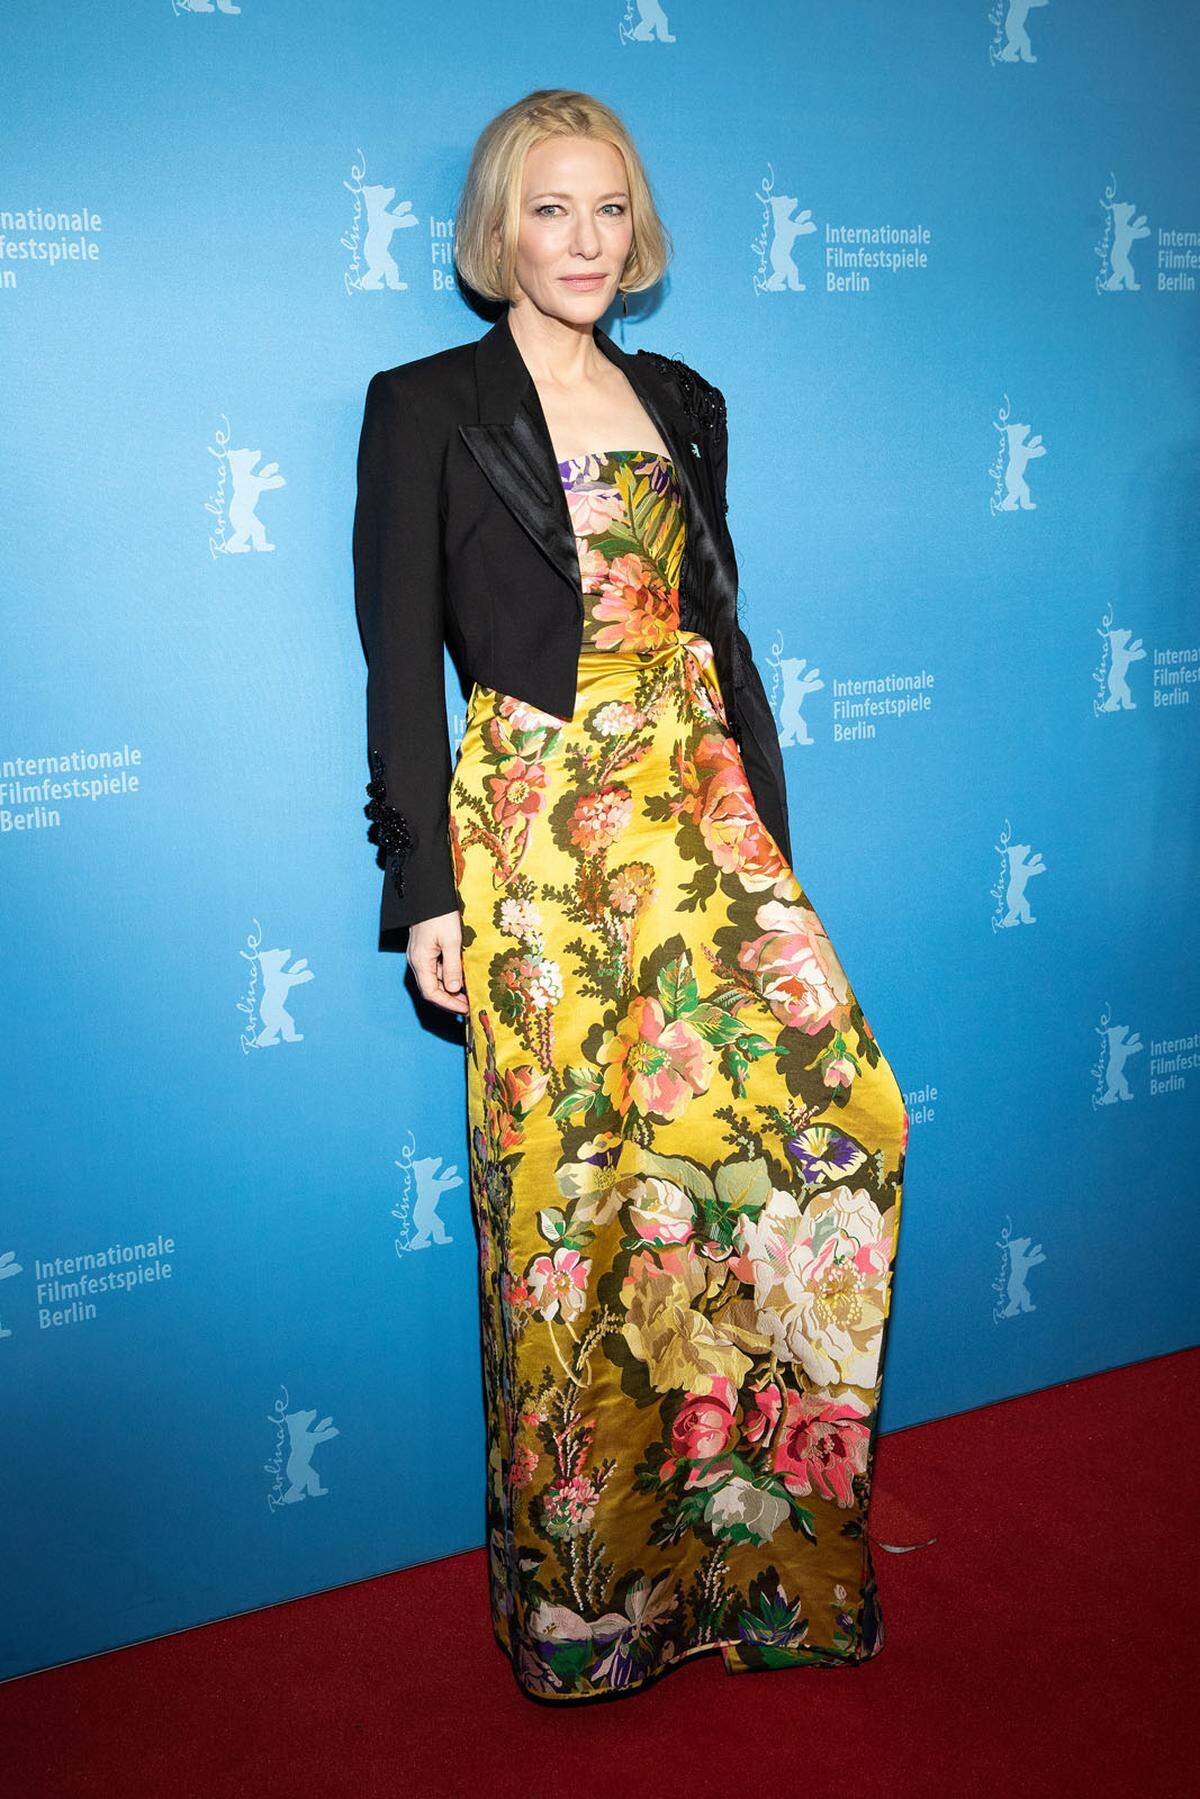 Schauspielerin Cate Blanchett brachte Farbe nach Berlin und erschien in einer eleganten Robe mit floralem Muster.